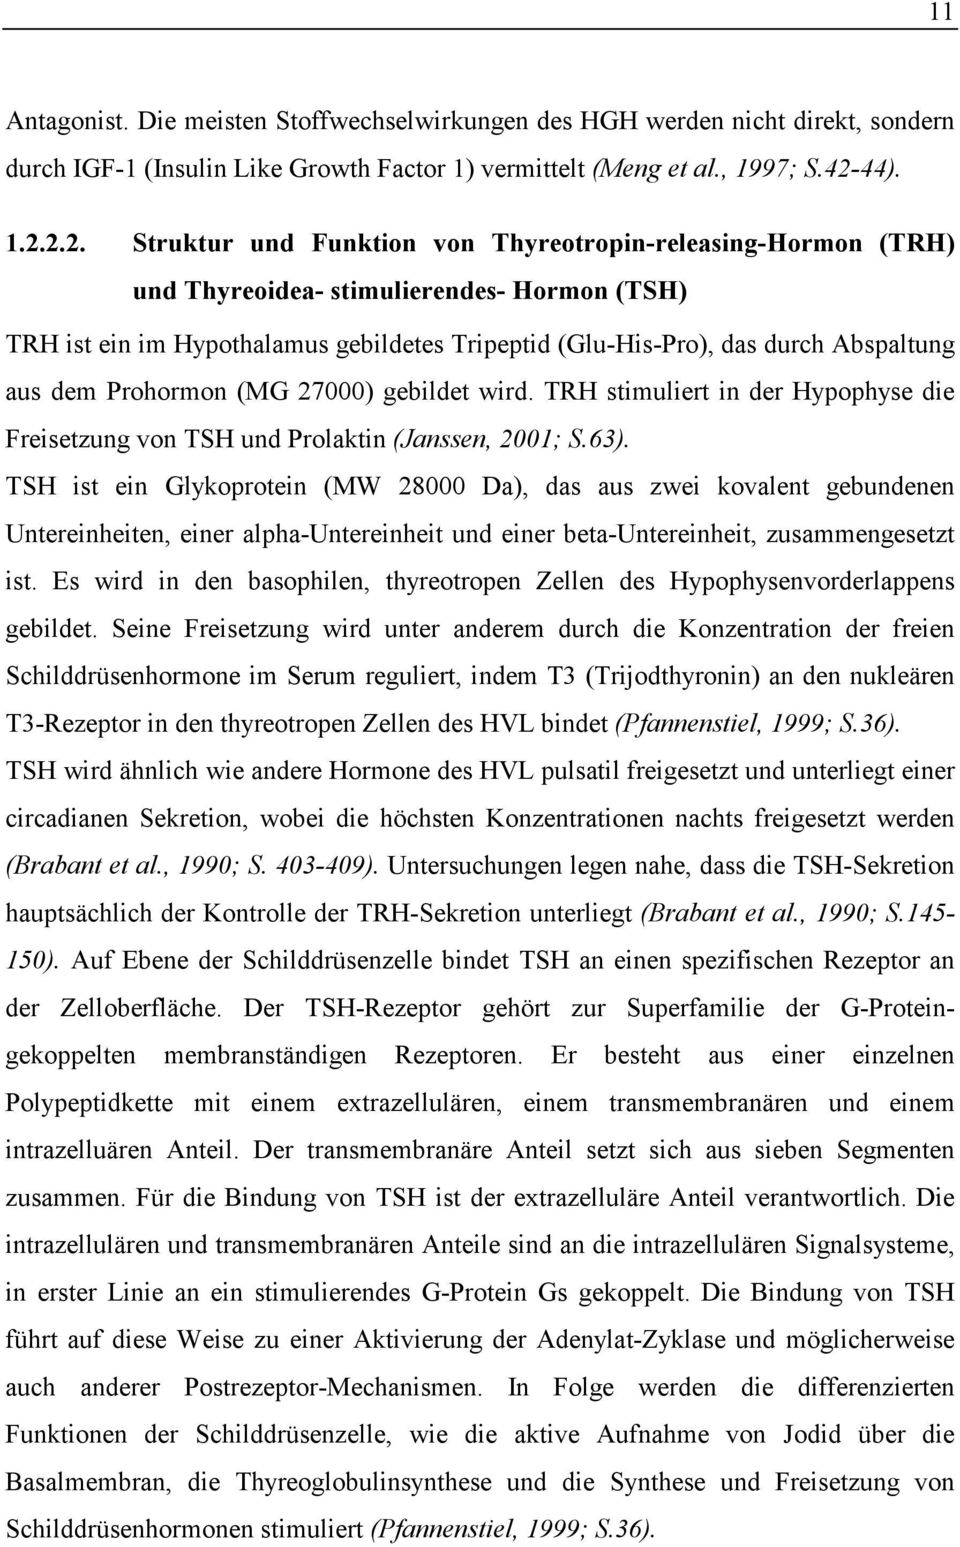 2.2. Struktur und Funktion von Thyreotropin-releasing-Hormon (TRH) und Thyreoidea- stimulierendes- Hormon (TSH) TRH ist ein im Hypothalamus gebildetes Tripeptid (Glu-His-Pro), das durch Abspaltung